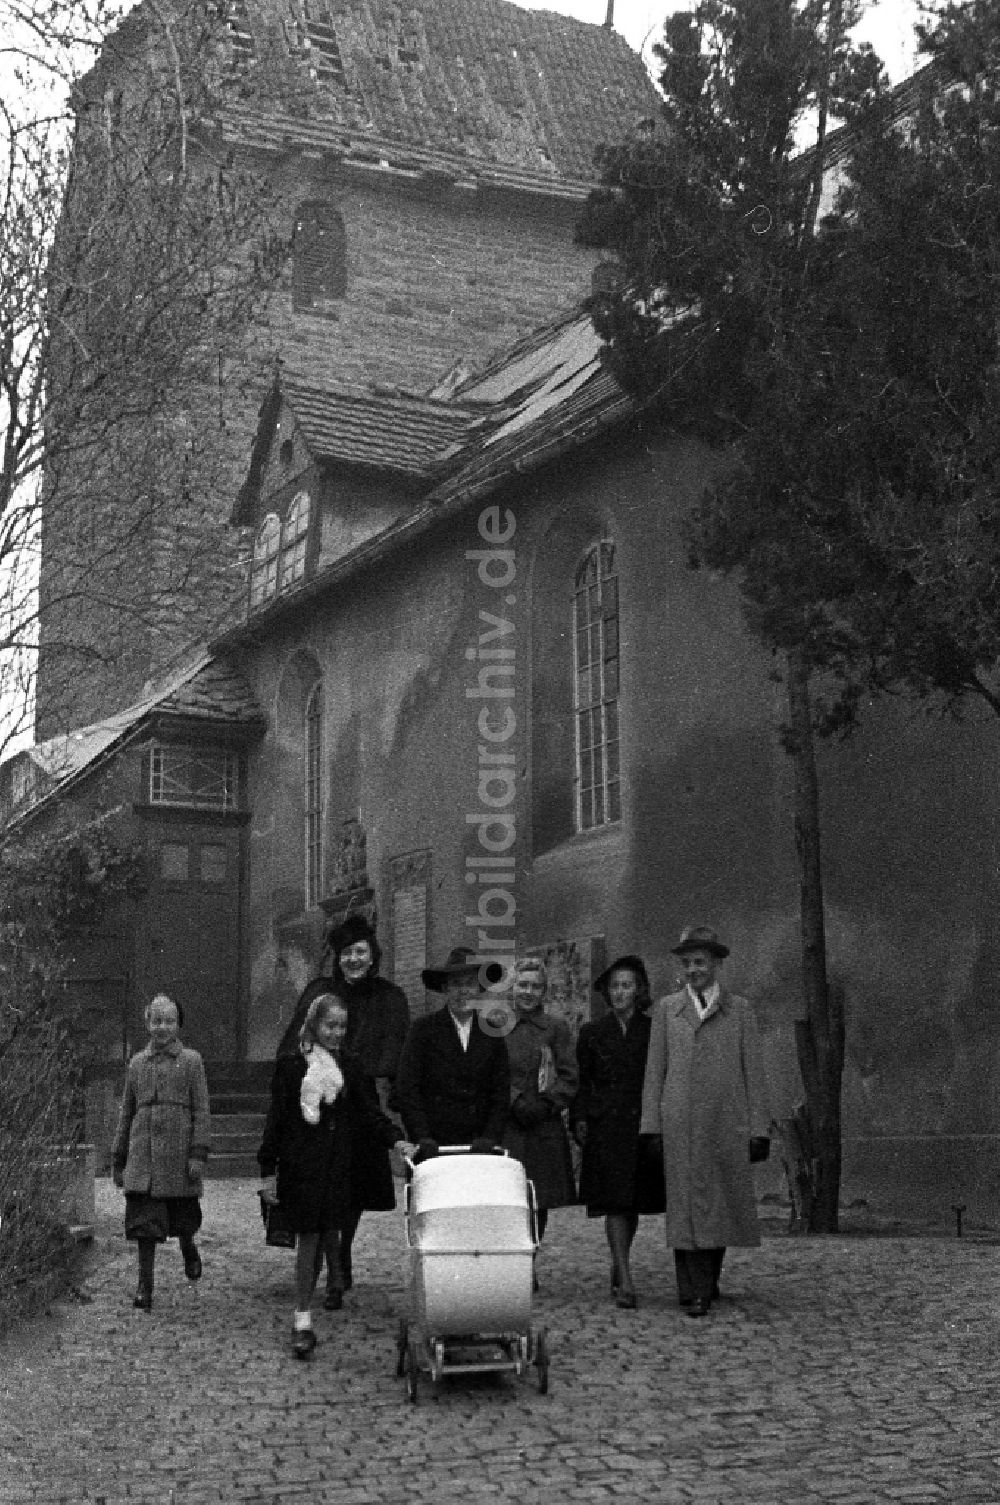 Merseburg: Sonntagsspaziergang einer Familie mit Kinderwagen in Merseburg in Sachsen-Anhalt in der DDR